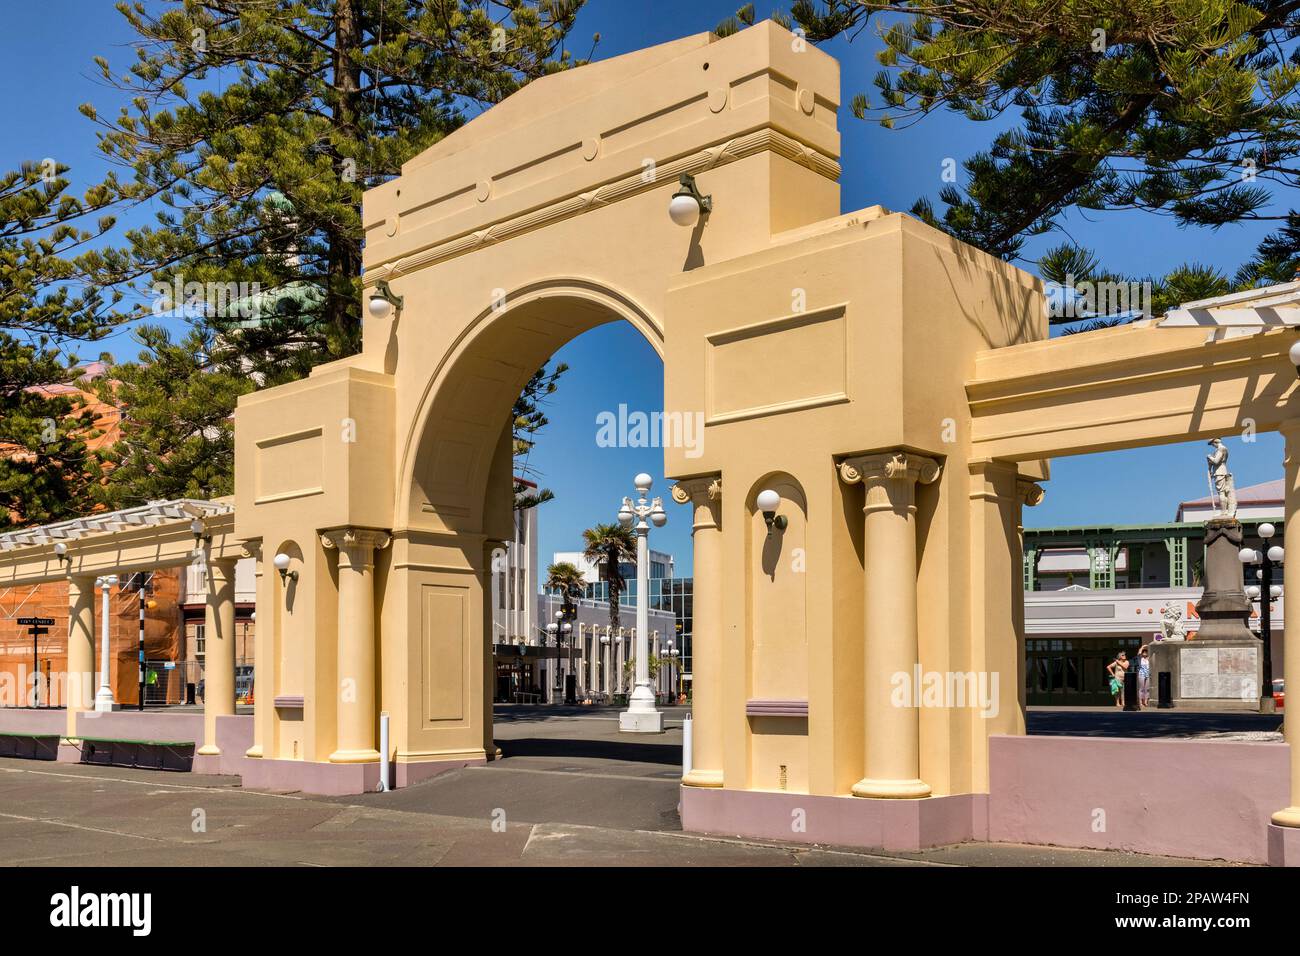 5. Dezember 2022: Napier, Hawkes Bay, Neuseeland - The Napier Arch on Marine Parade in Napier, Neuseeland. Napier wurde größtenteils im Art déco-Stil umgebaut... Stockfoto